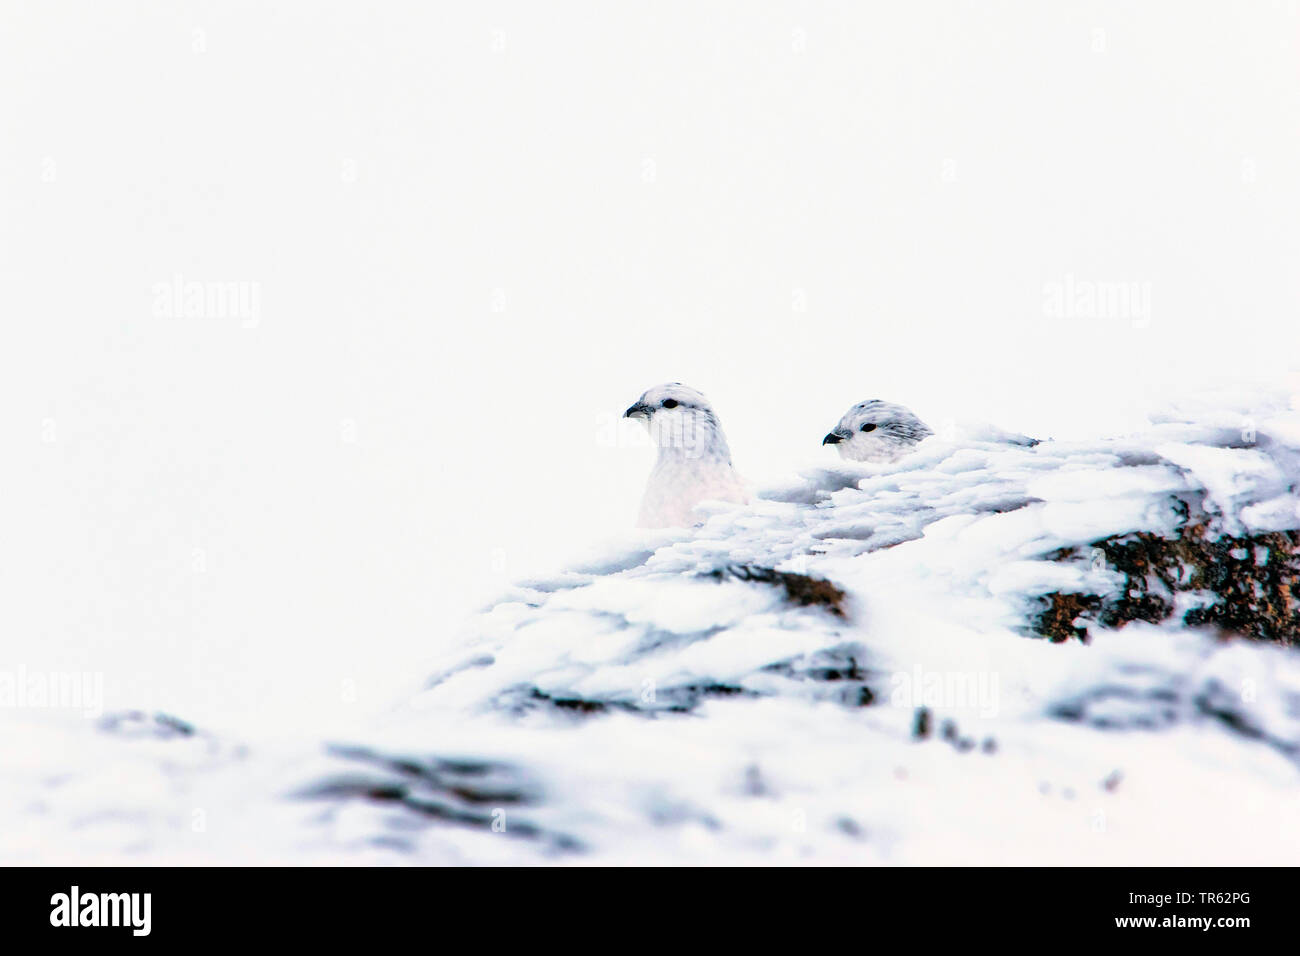 Rock Ptarmigan, Schnee Huhn (Lagopus mutus), zwei Schnee Hühner sitzen im Schnee und Peering hinter einem eisigen Felsen, Vereinigtes Königreich, Schottland, Avimore Stockfoto